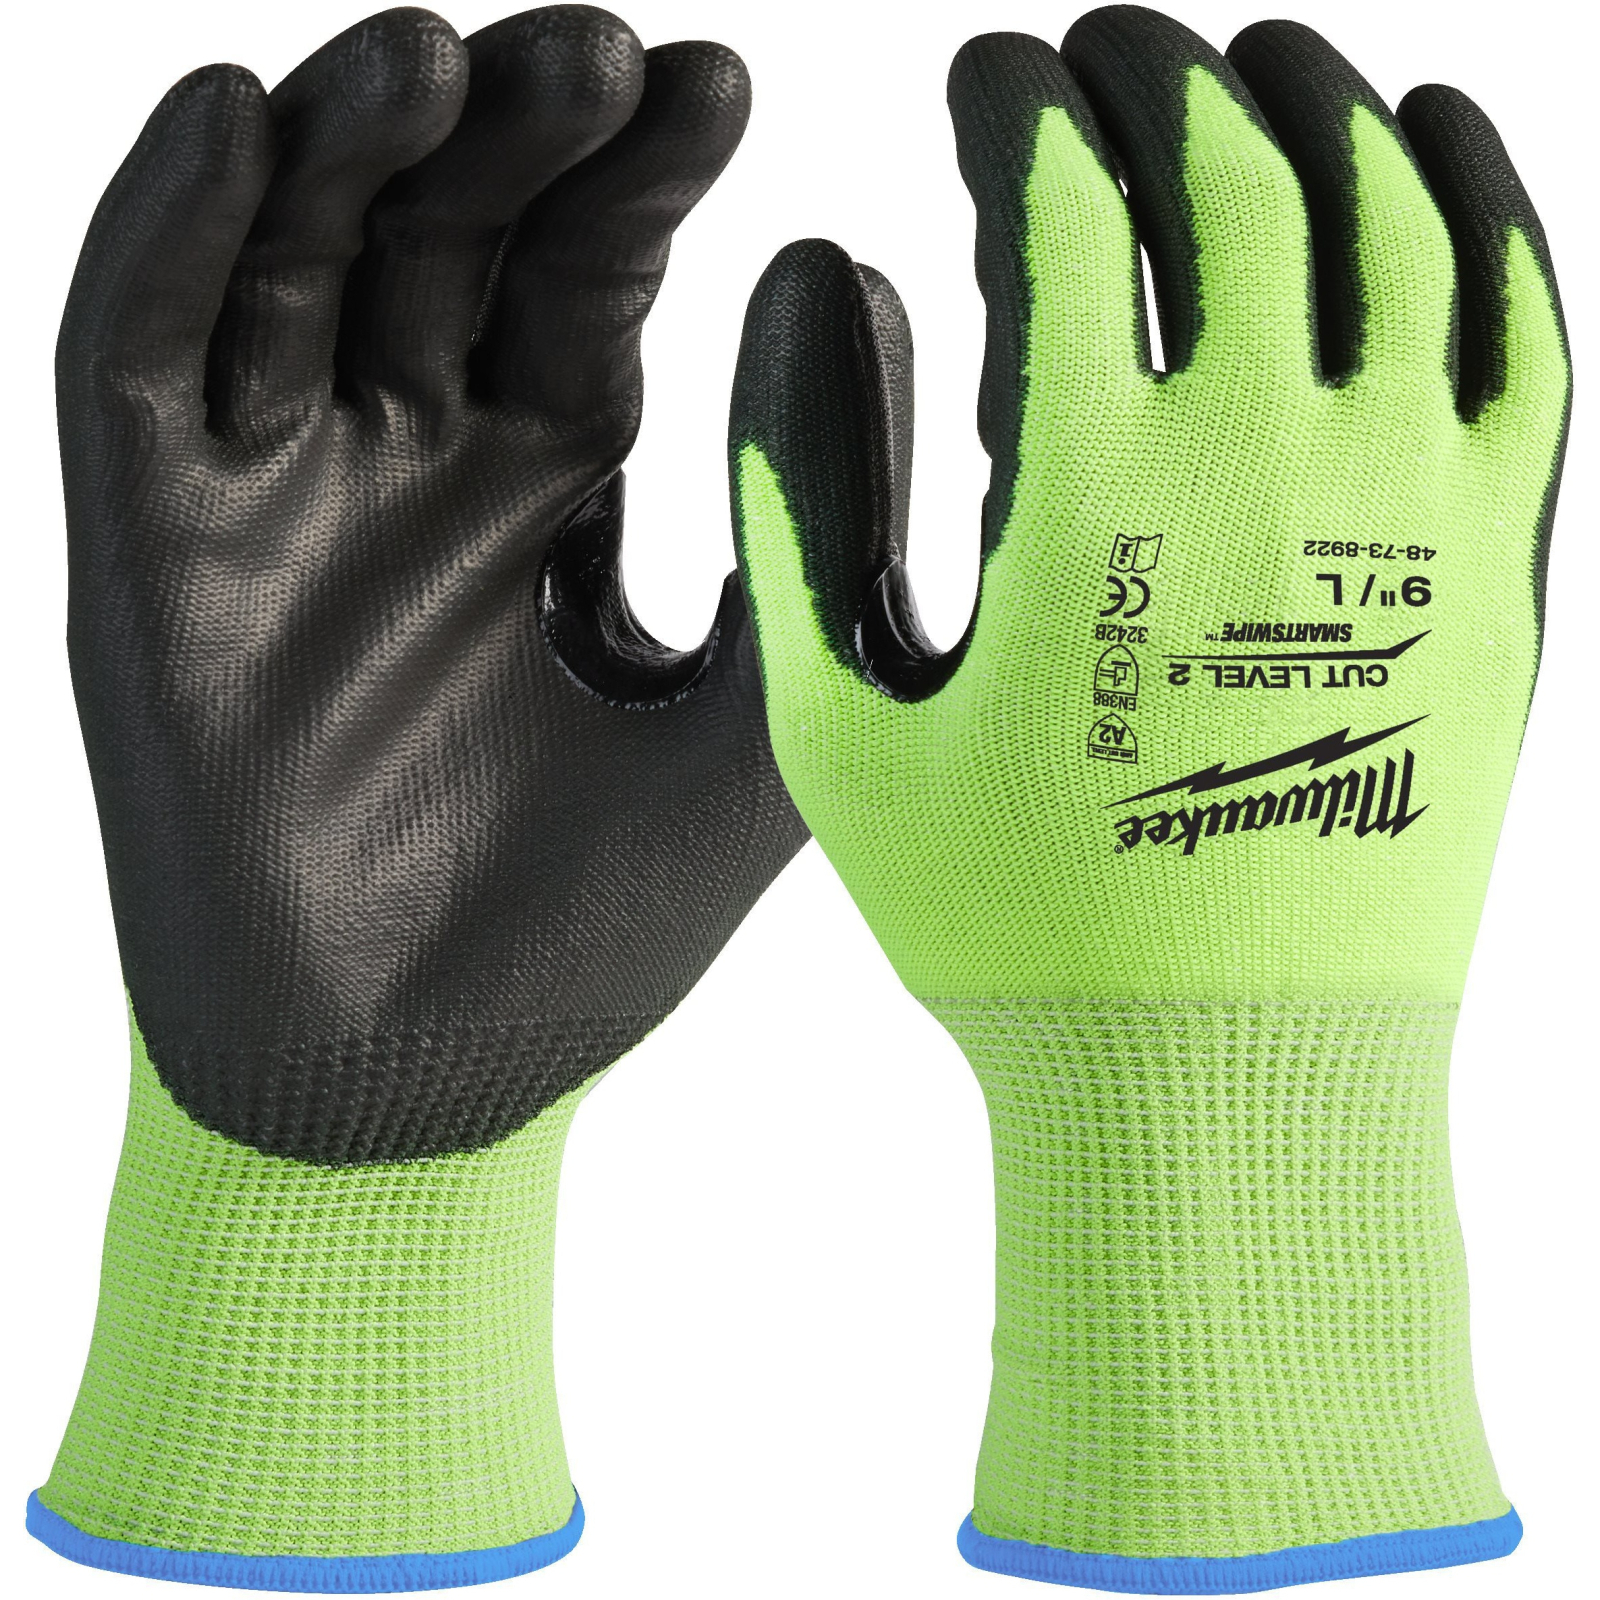 Защитные перчатки Milwaukee сигнальные с уровнем сопротивления порезам 2, L/9 (4932479923)